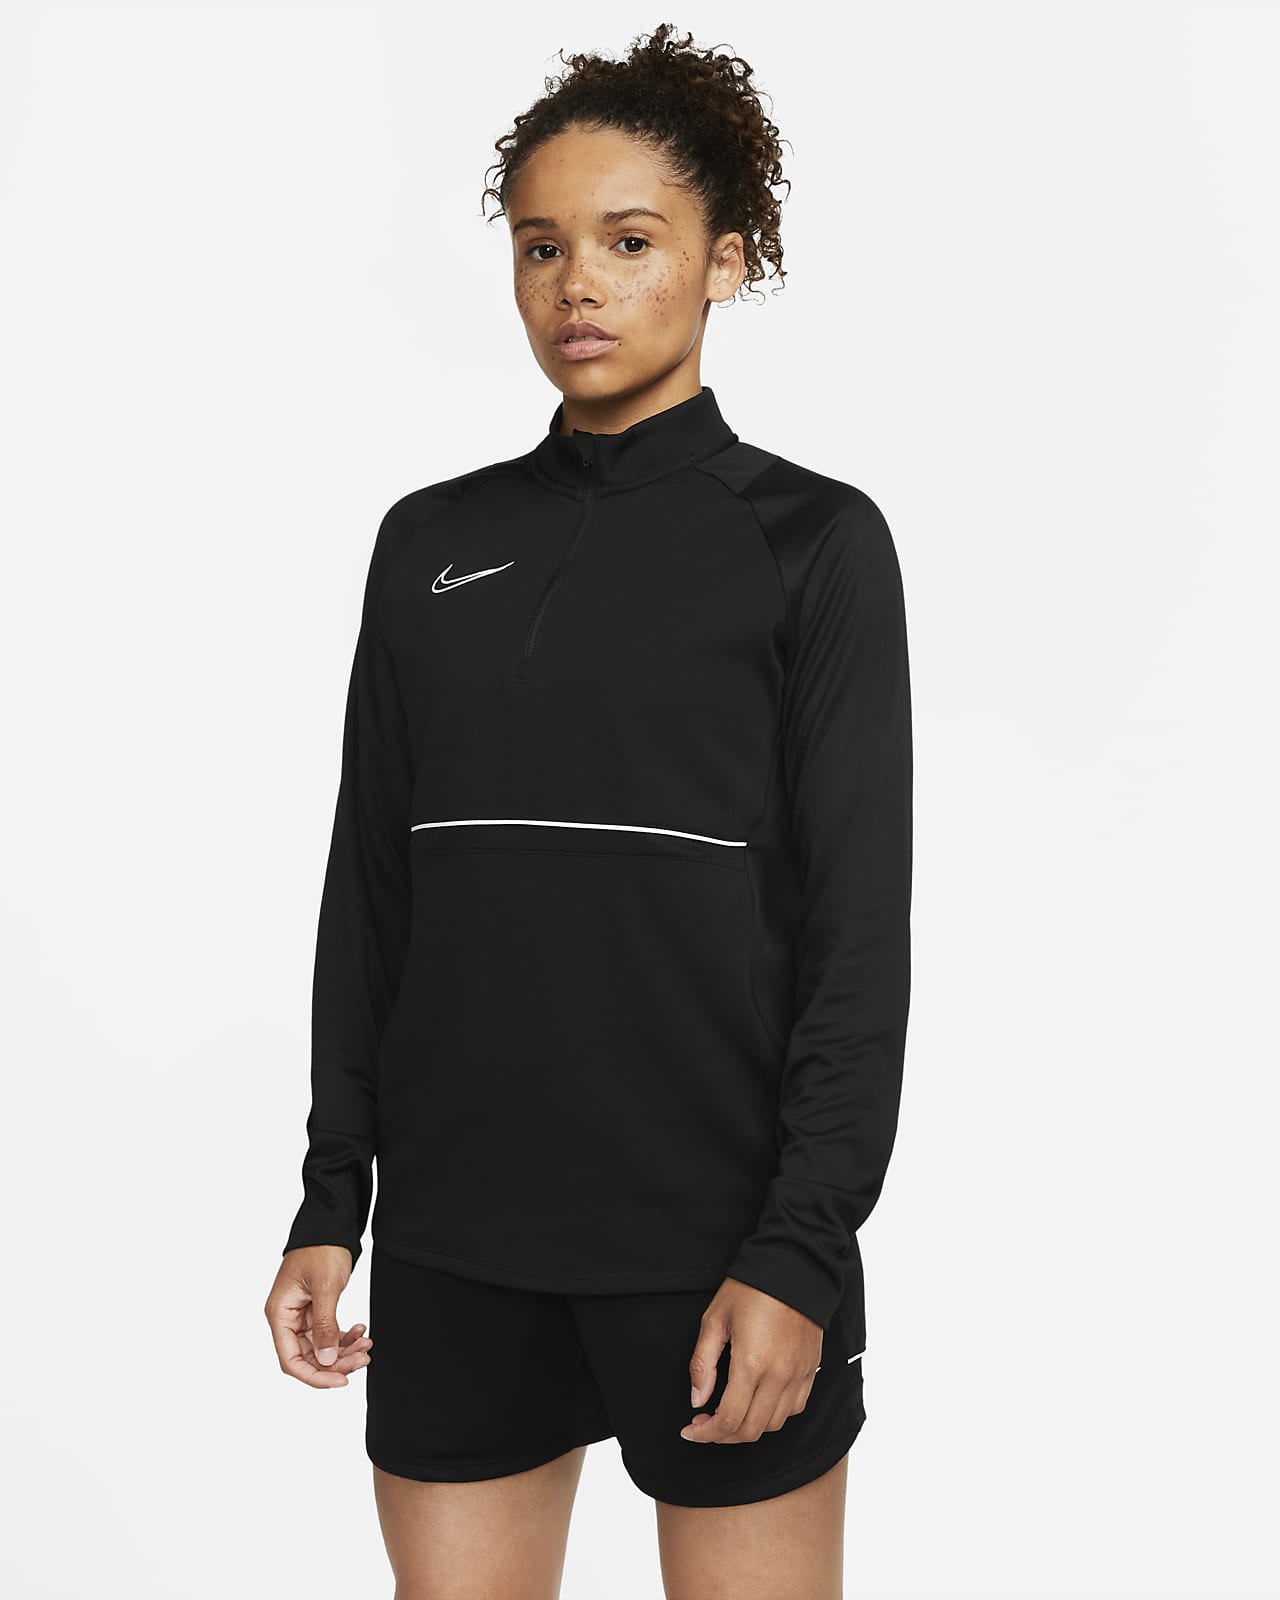 Comprometido Destilar silencio Nike Dri-FIT Academy Camiseta de entrenamiento - Mujer. Nike ES